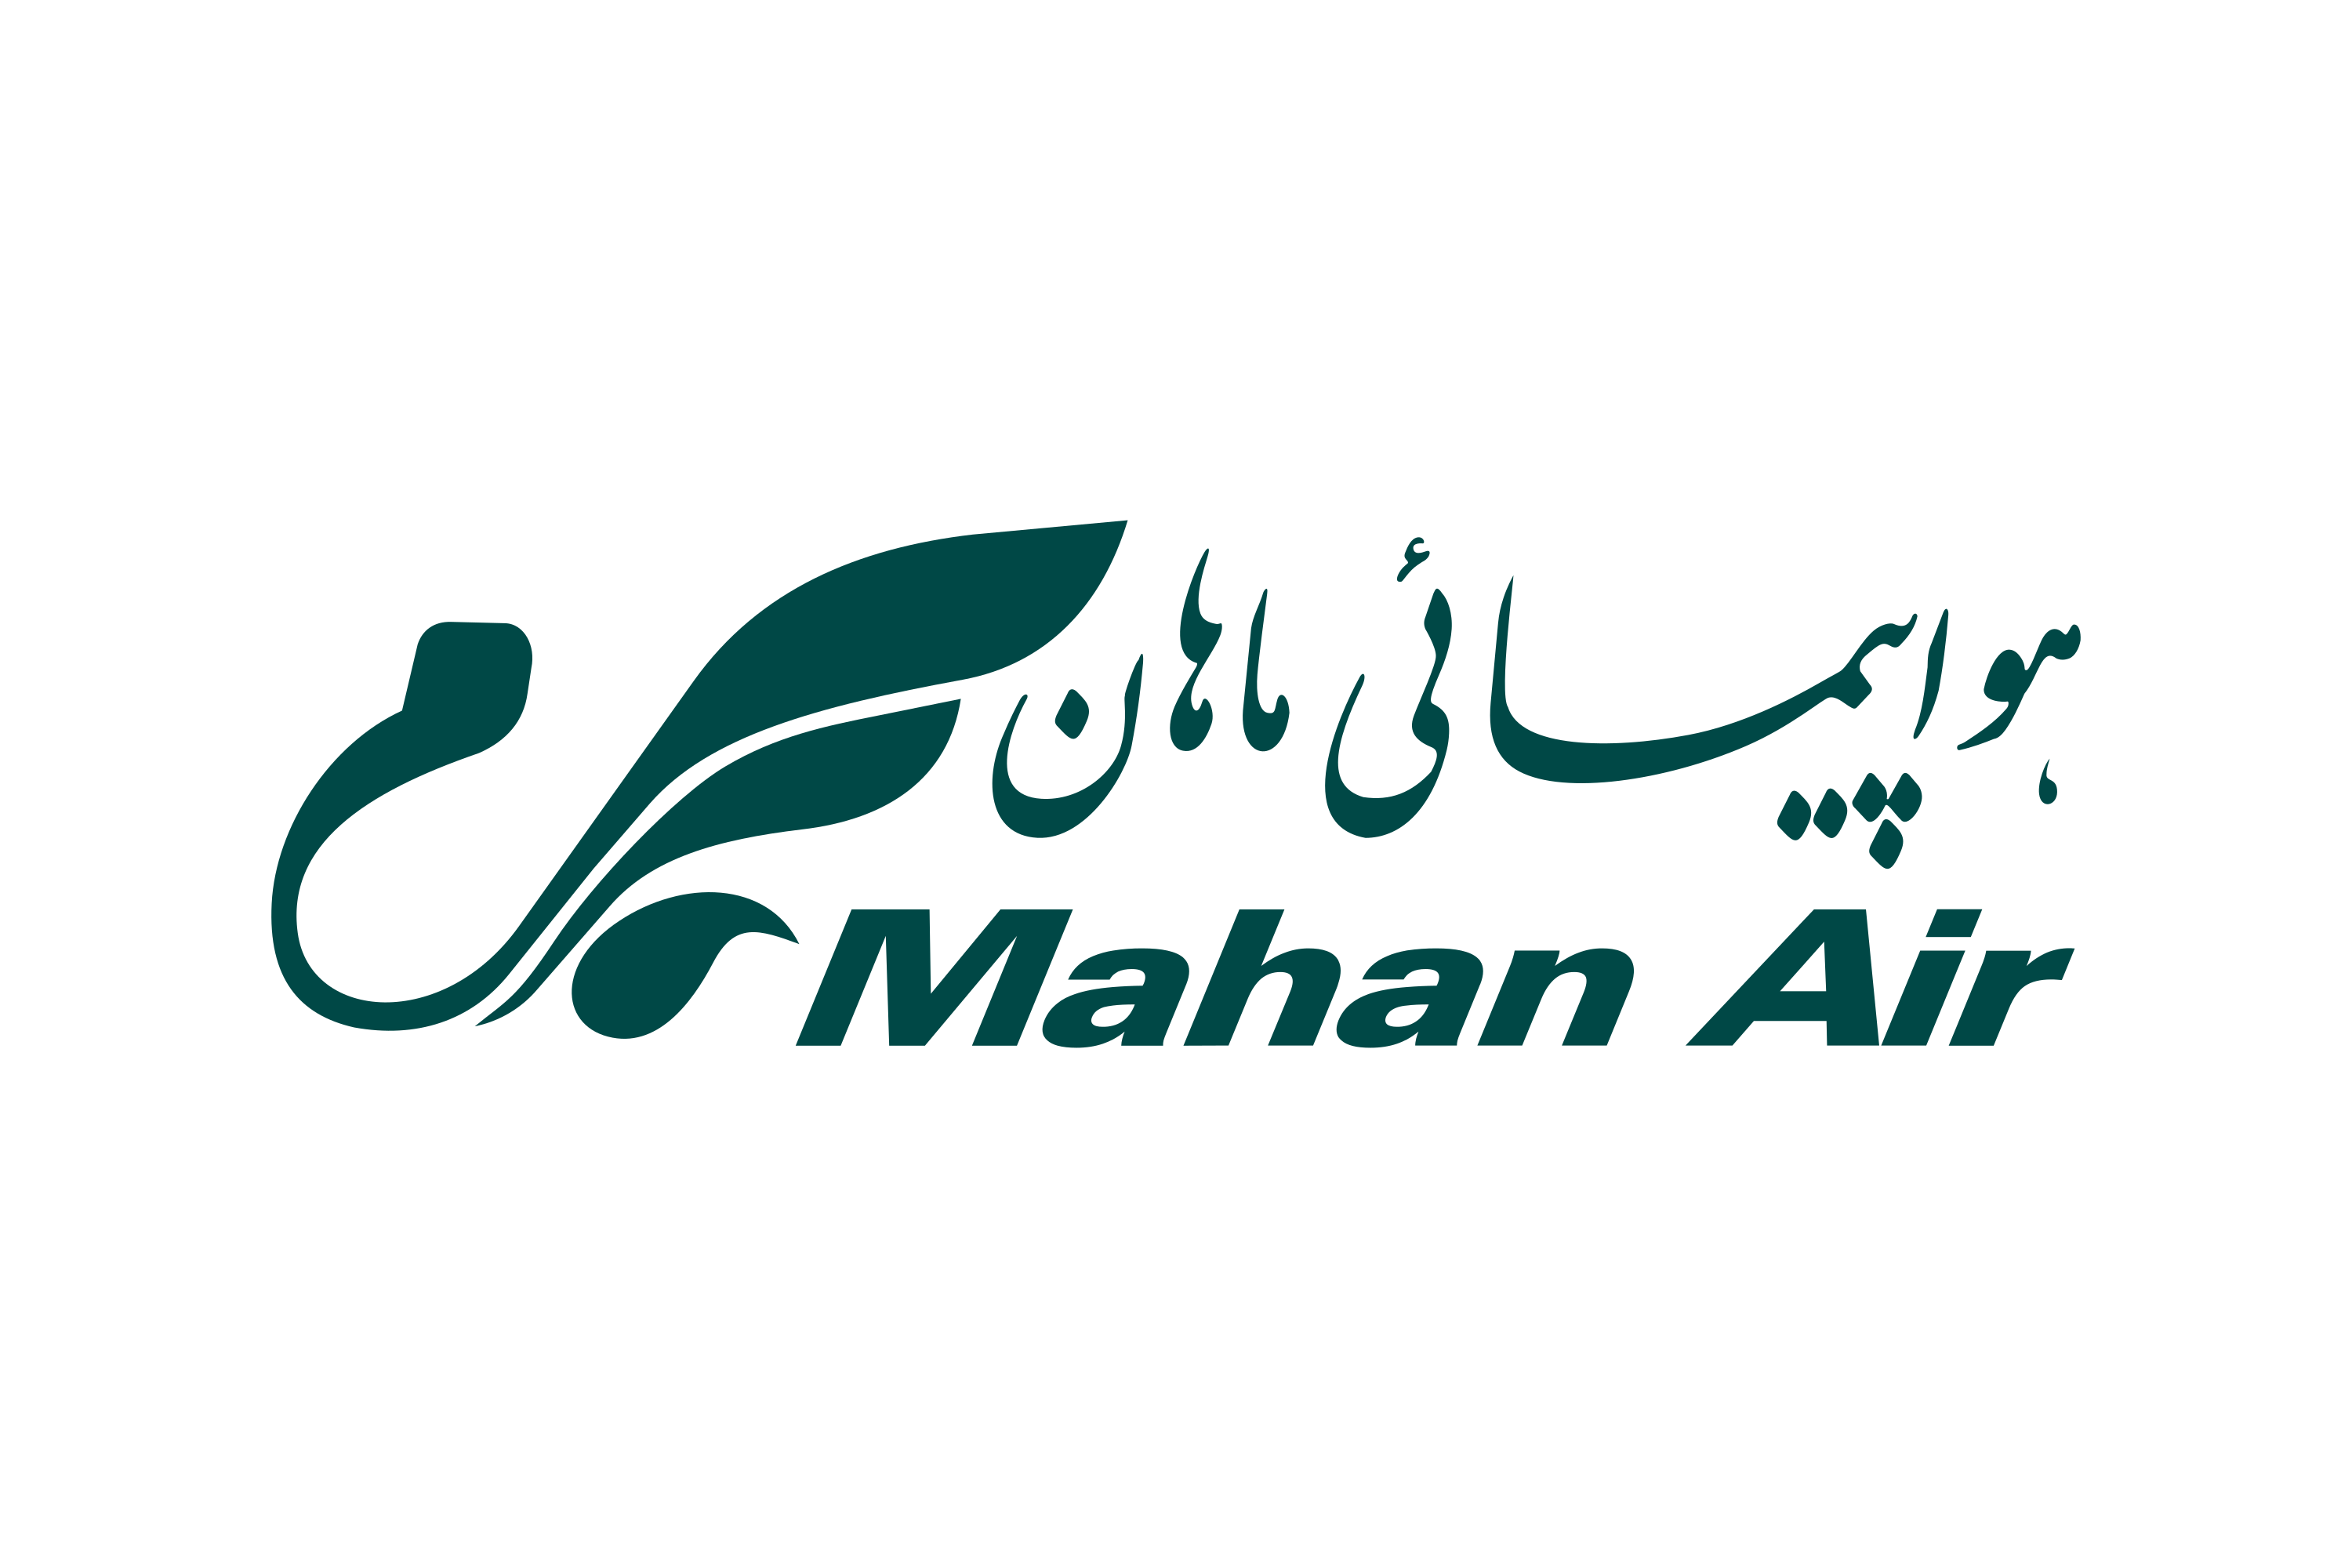 Download Mahan Air Logo in SVG Vector or PNG File Format ...